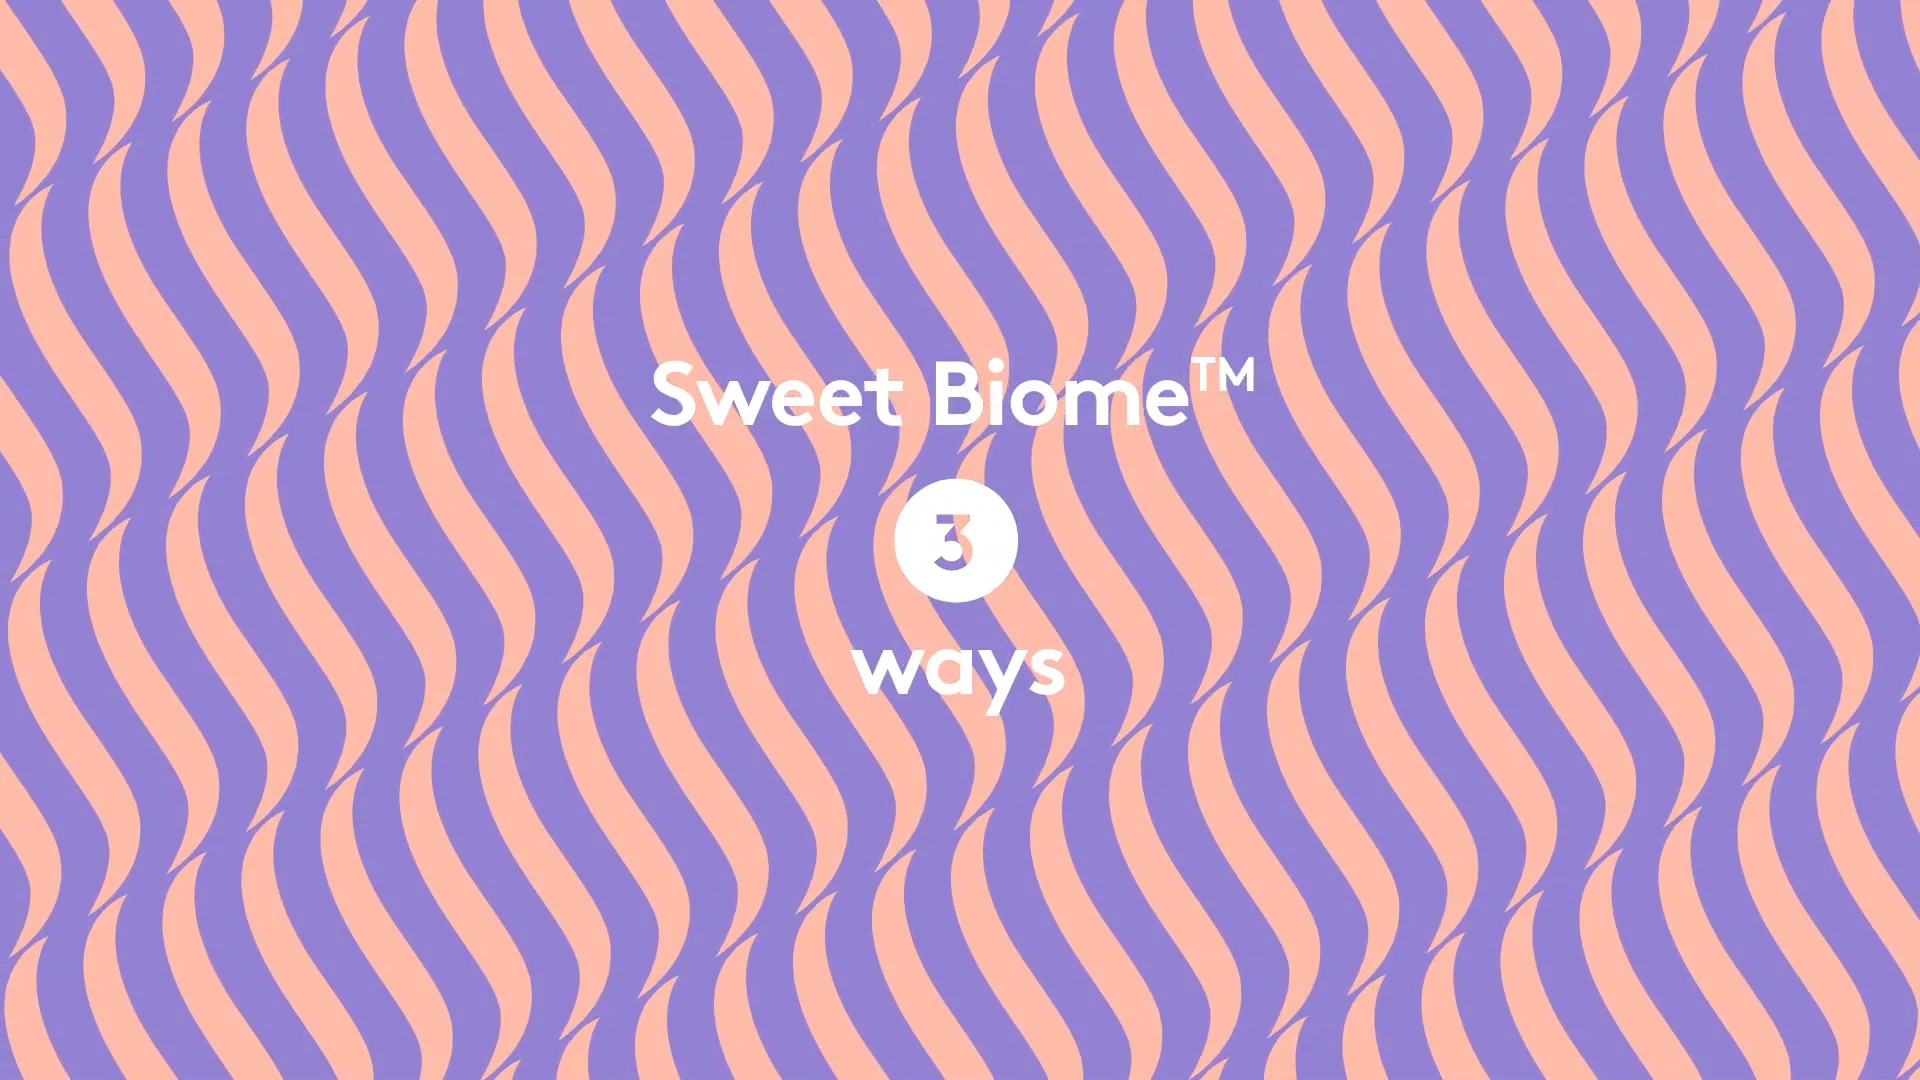 Vidéo de conseils d’utilisation du nouveau Sweet Biome Spray au saké fermenté